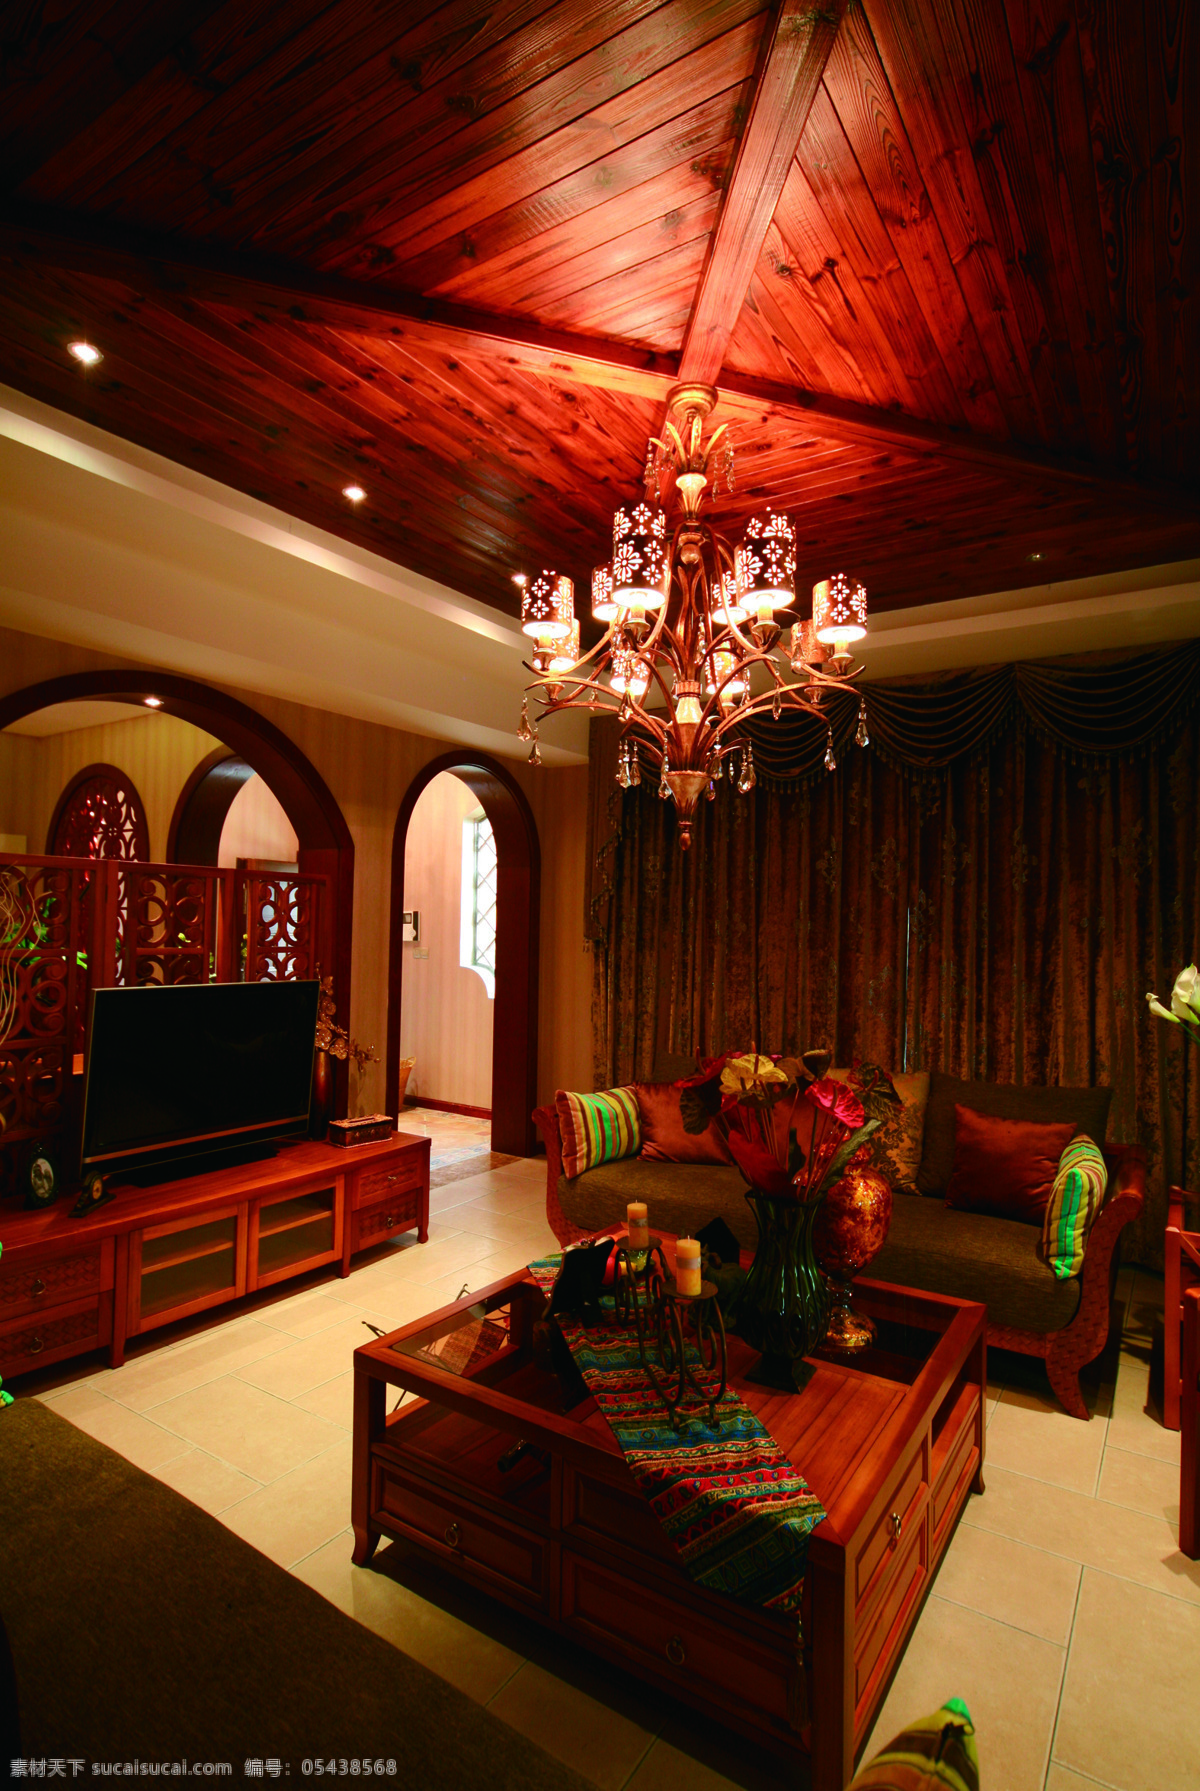 东南亚 风格 客厅 红木家具 室内装修 效果图 木制天花板 水晶灯 条纹抱枕 大理石地板